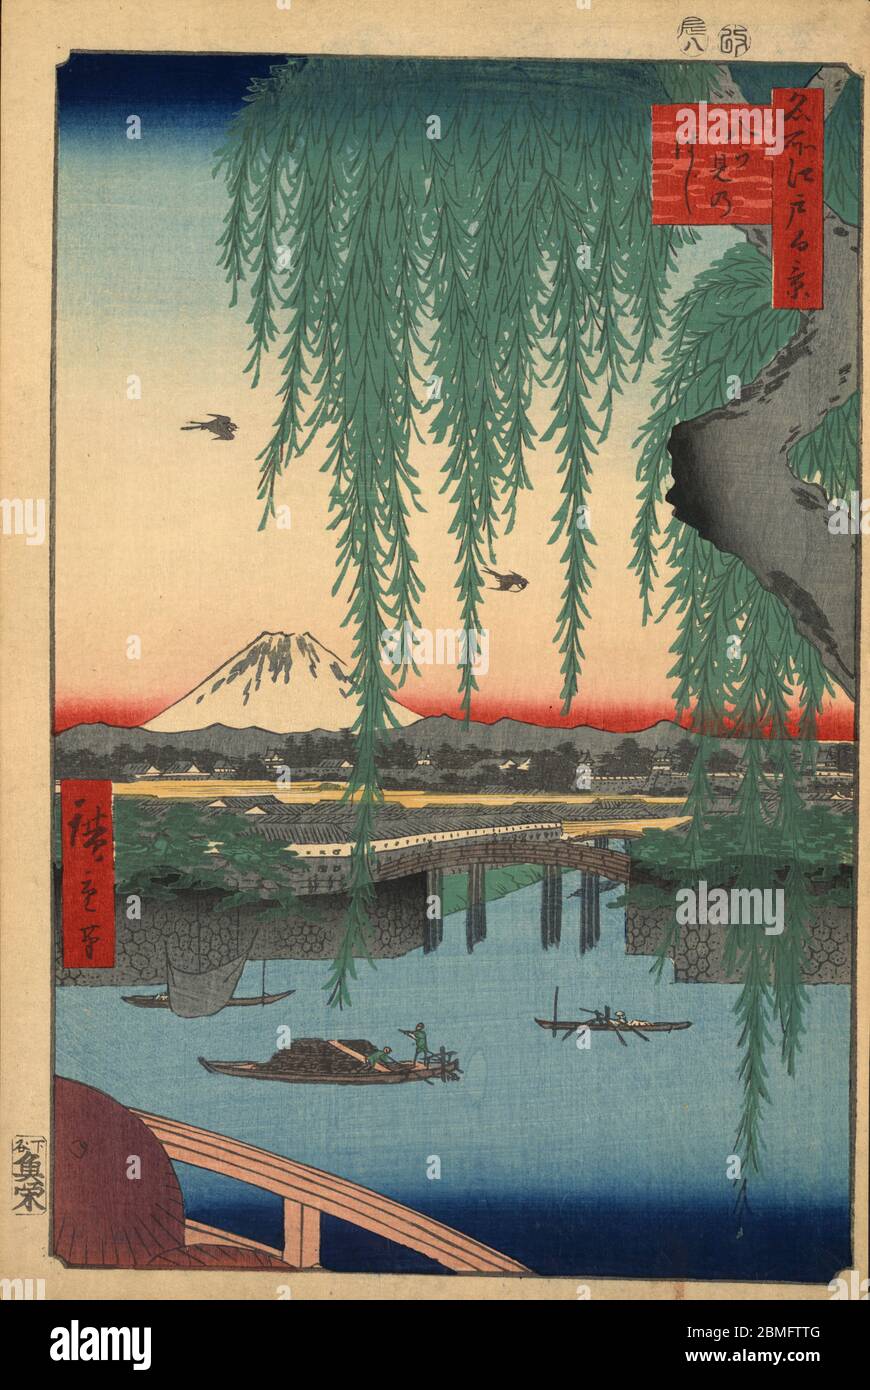 [ 1850er Japan - Edo Castle und Mount Fuji ] - Blick auf Edo Castle in Edo (aktuelle Tokyo), 1856 (Ansei 3). Im Hintergrund ist der Fuji zu sehen. Dieser Holzschnitt ist Bild 45 in hundert berühmten Ansichten von Edo (名所江戸百景, Meisho Edo Hyakkei), einer Serie von Ukiyoe Künstler Utagawa Hiroshige (歌川広重, 1797–1858) erstellt. Es ist eine von 30 Sommerszenen der Serie. Titel: Yatsumi-Brücke (八ツ見のはし, Yatsumi no hashi) Vintage-Holzschnitt aus dem 19. Jahrhundert. Stockfoto